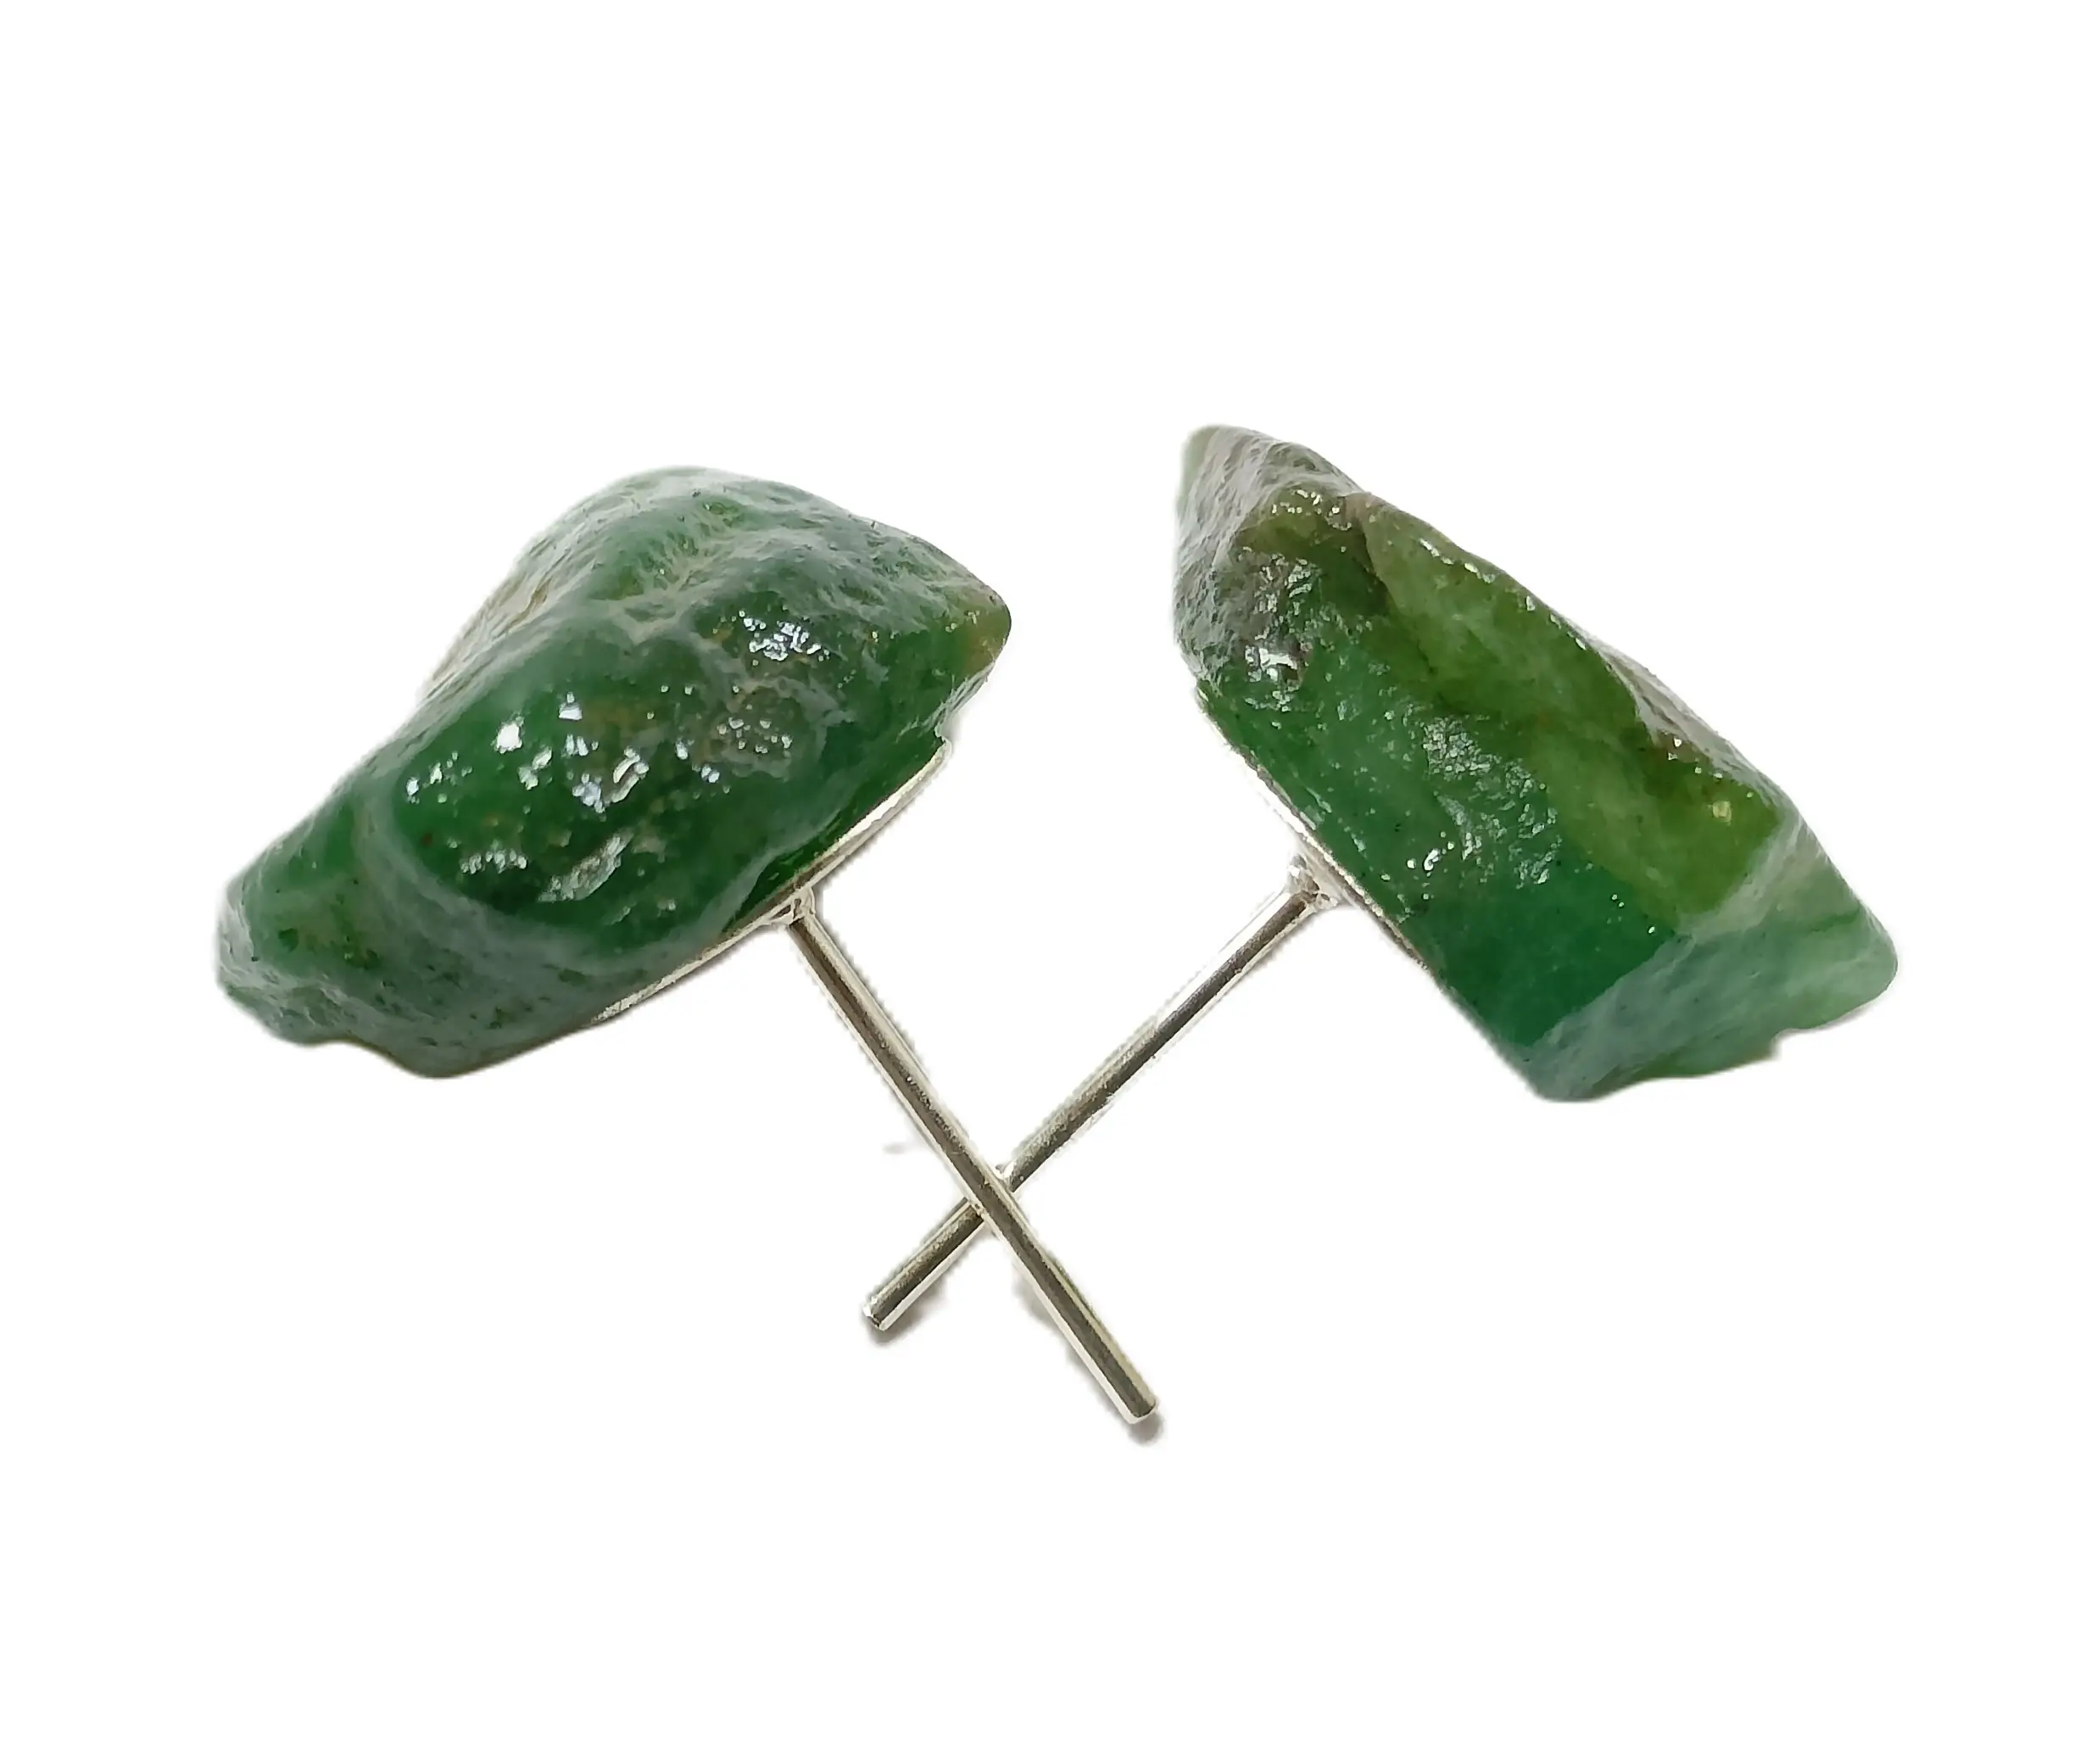 Kristal taş damızlık yeşil yeşim çip küpe boncuk şifa taş kristal kadınlar için moda takı set damızlık toptancı